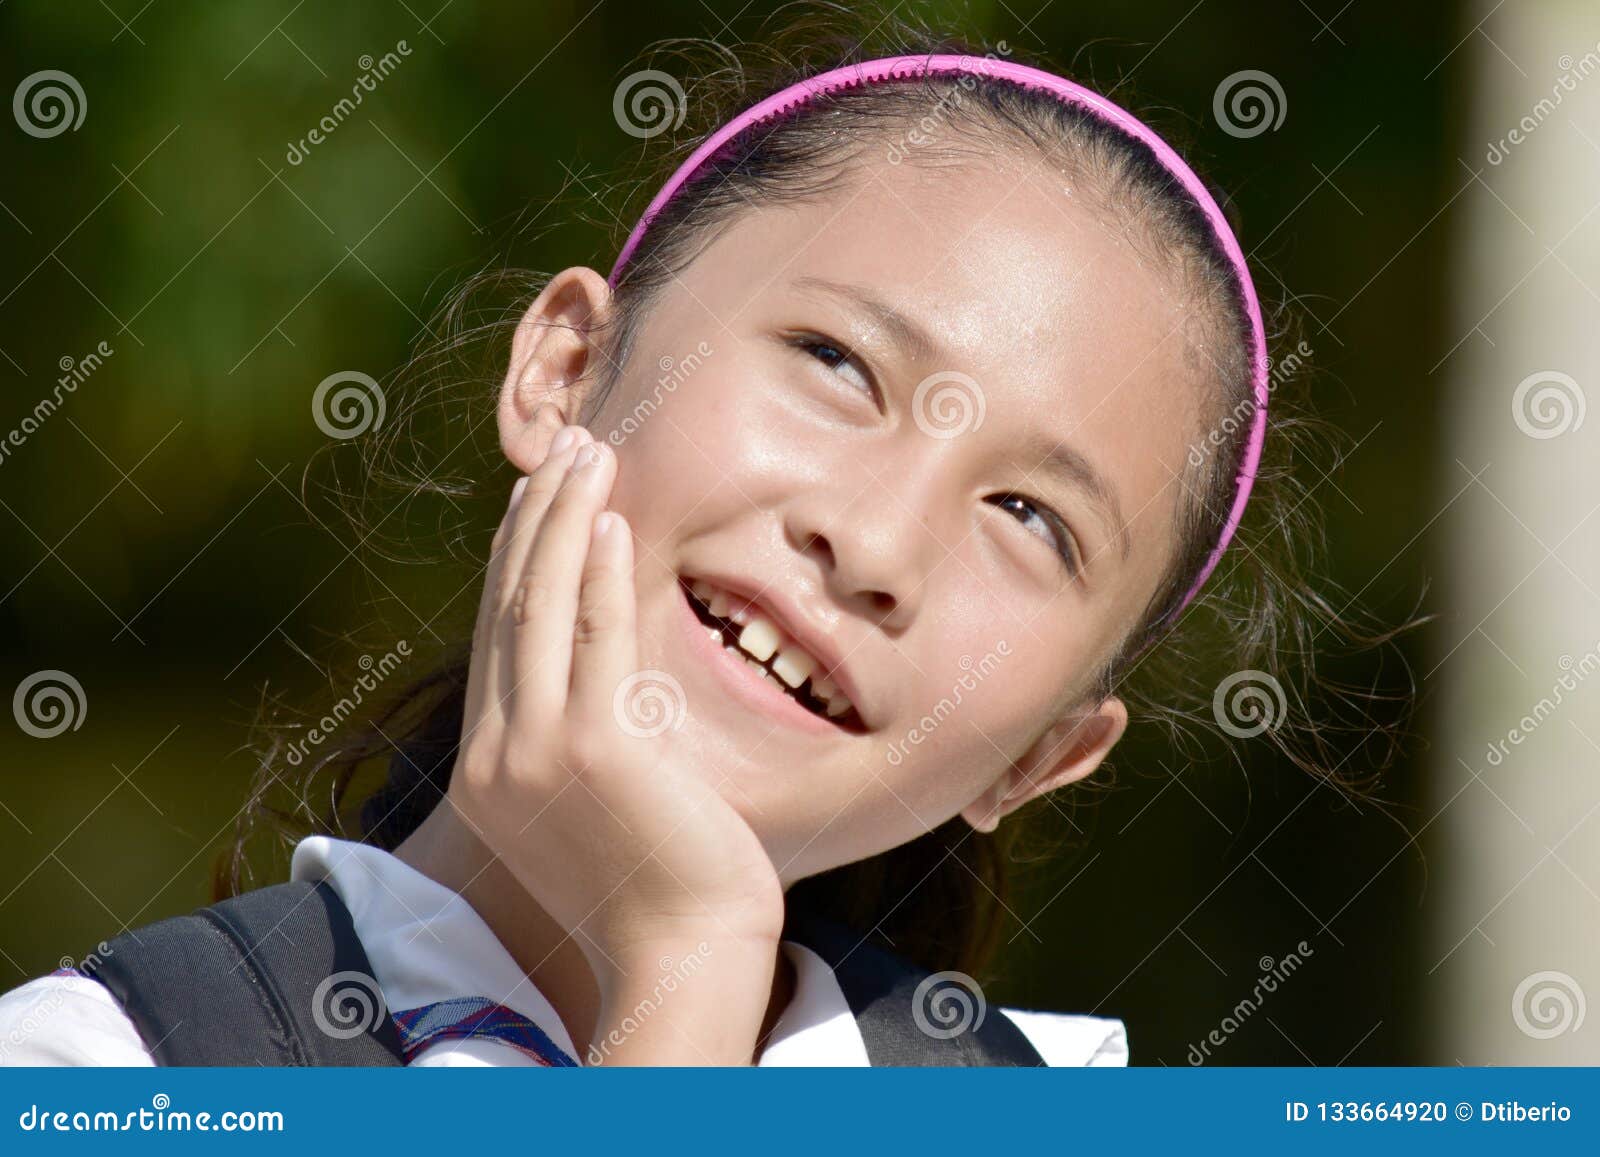 菲律宾女孩 库存照片. 图片 包括有 喜悦, 童年, 自豪感, 敬慕, 年轻, 菲律宾, 孩子, 高尚 - 158322770